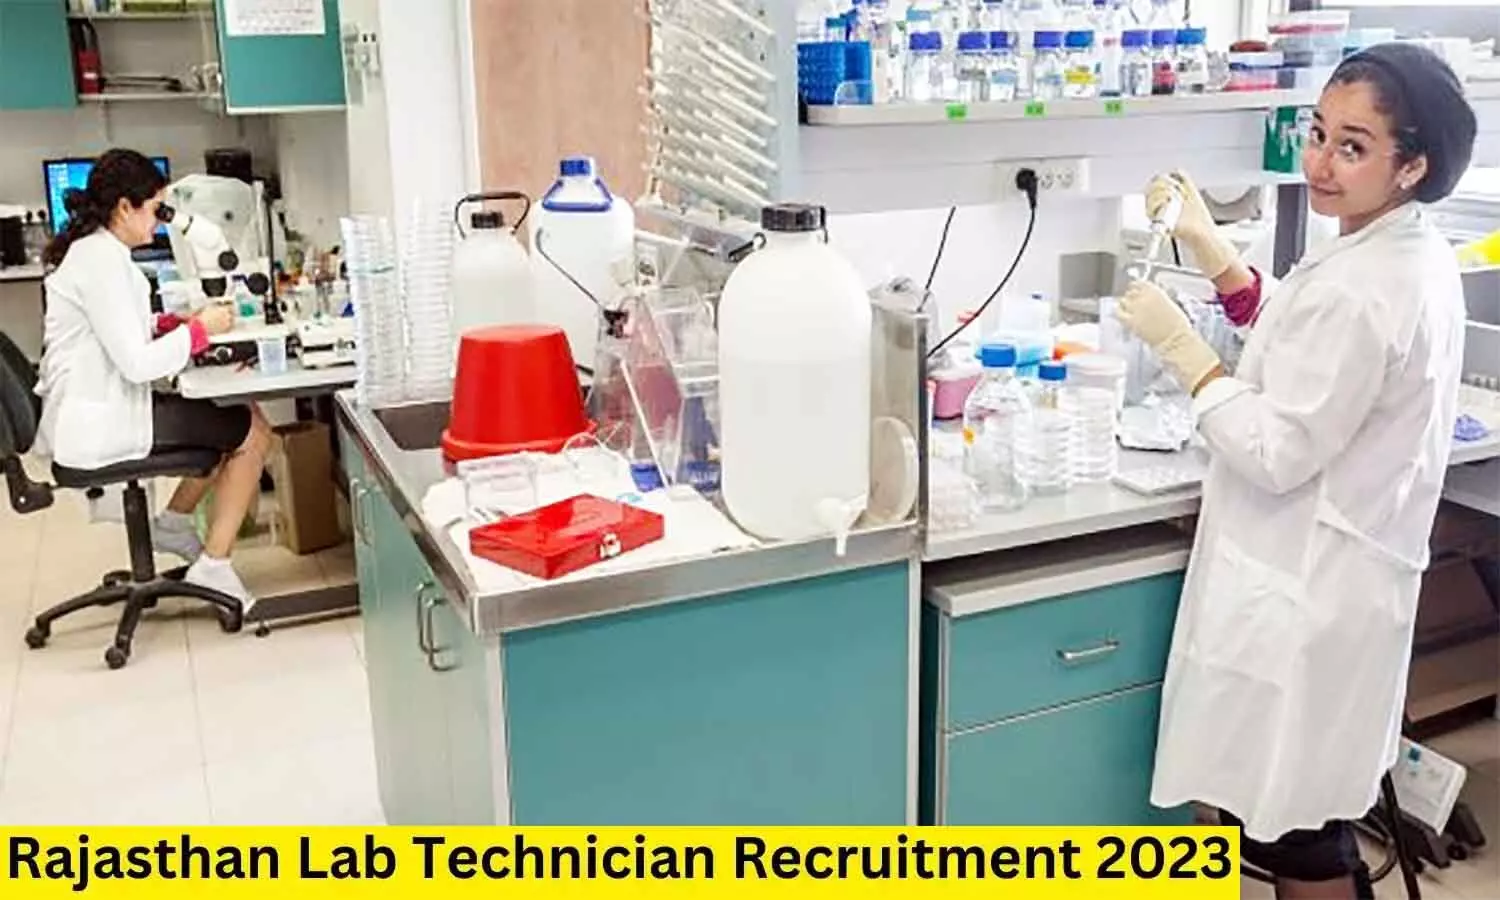 Lab Technician Recruitment 2023: हेल्थ डिपार्टमेंट में निकली वैकेंसी, ₹32,300 मिलेगी सैलरी, पद व योग्यता फटाफट जान लें